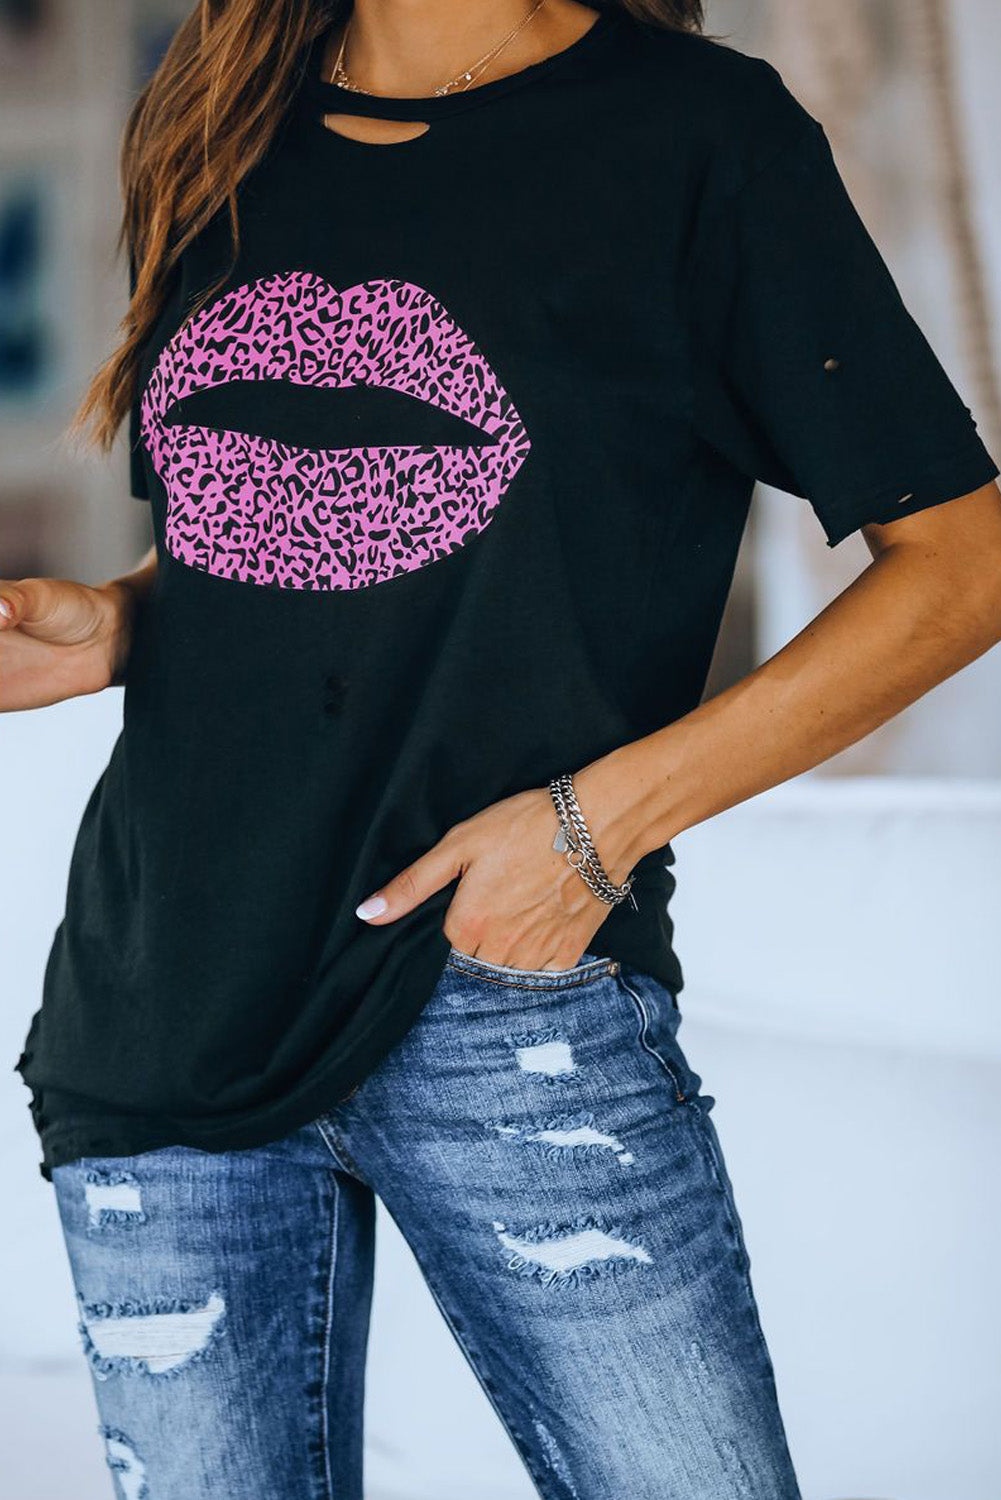 Trendsi Cupid Beauty Supplies Woman's T-Shirts Leopard Lip Distressed T-Shirt